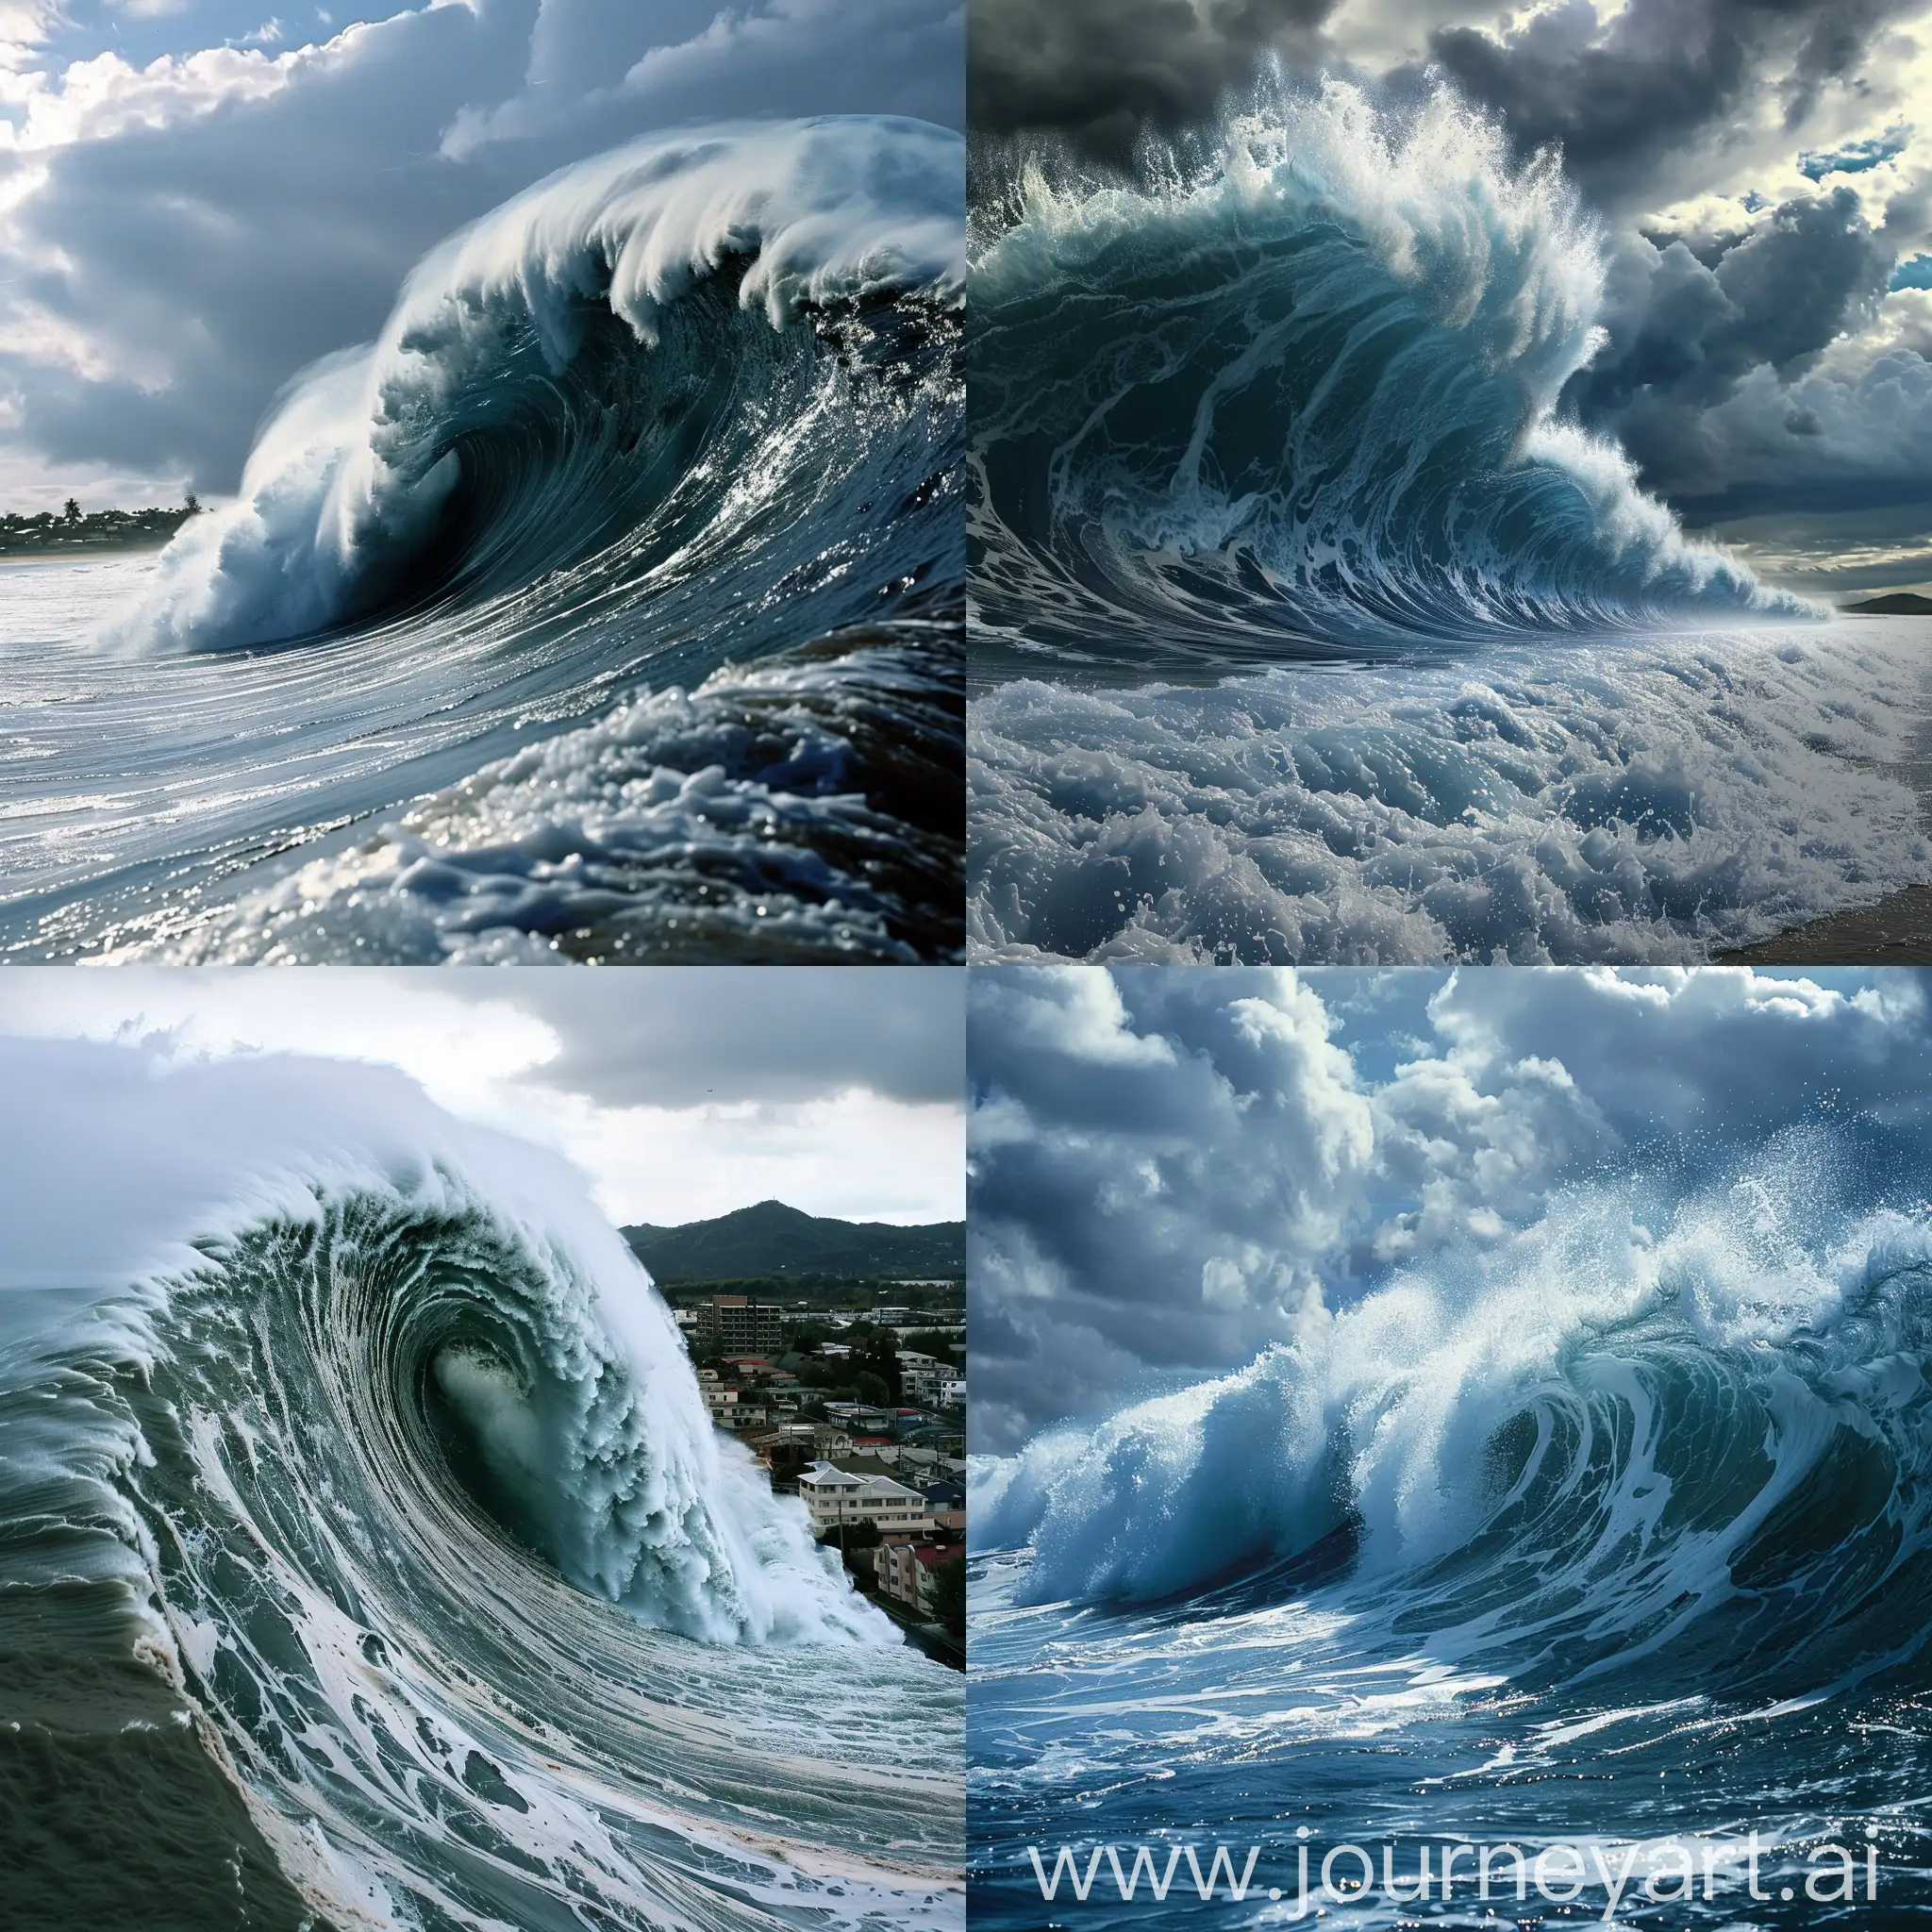 Tsunami-Danger-Illustration-Waves-Crashing-on-Coastal-Town